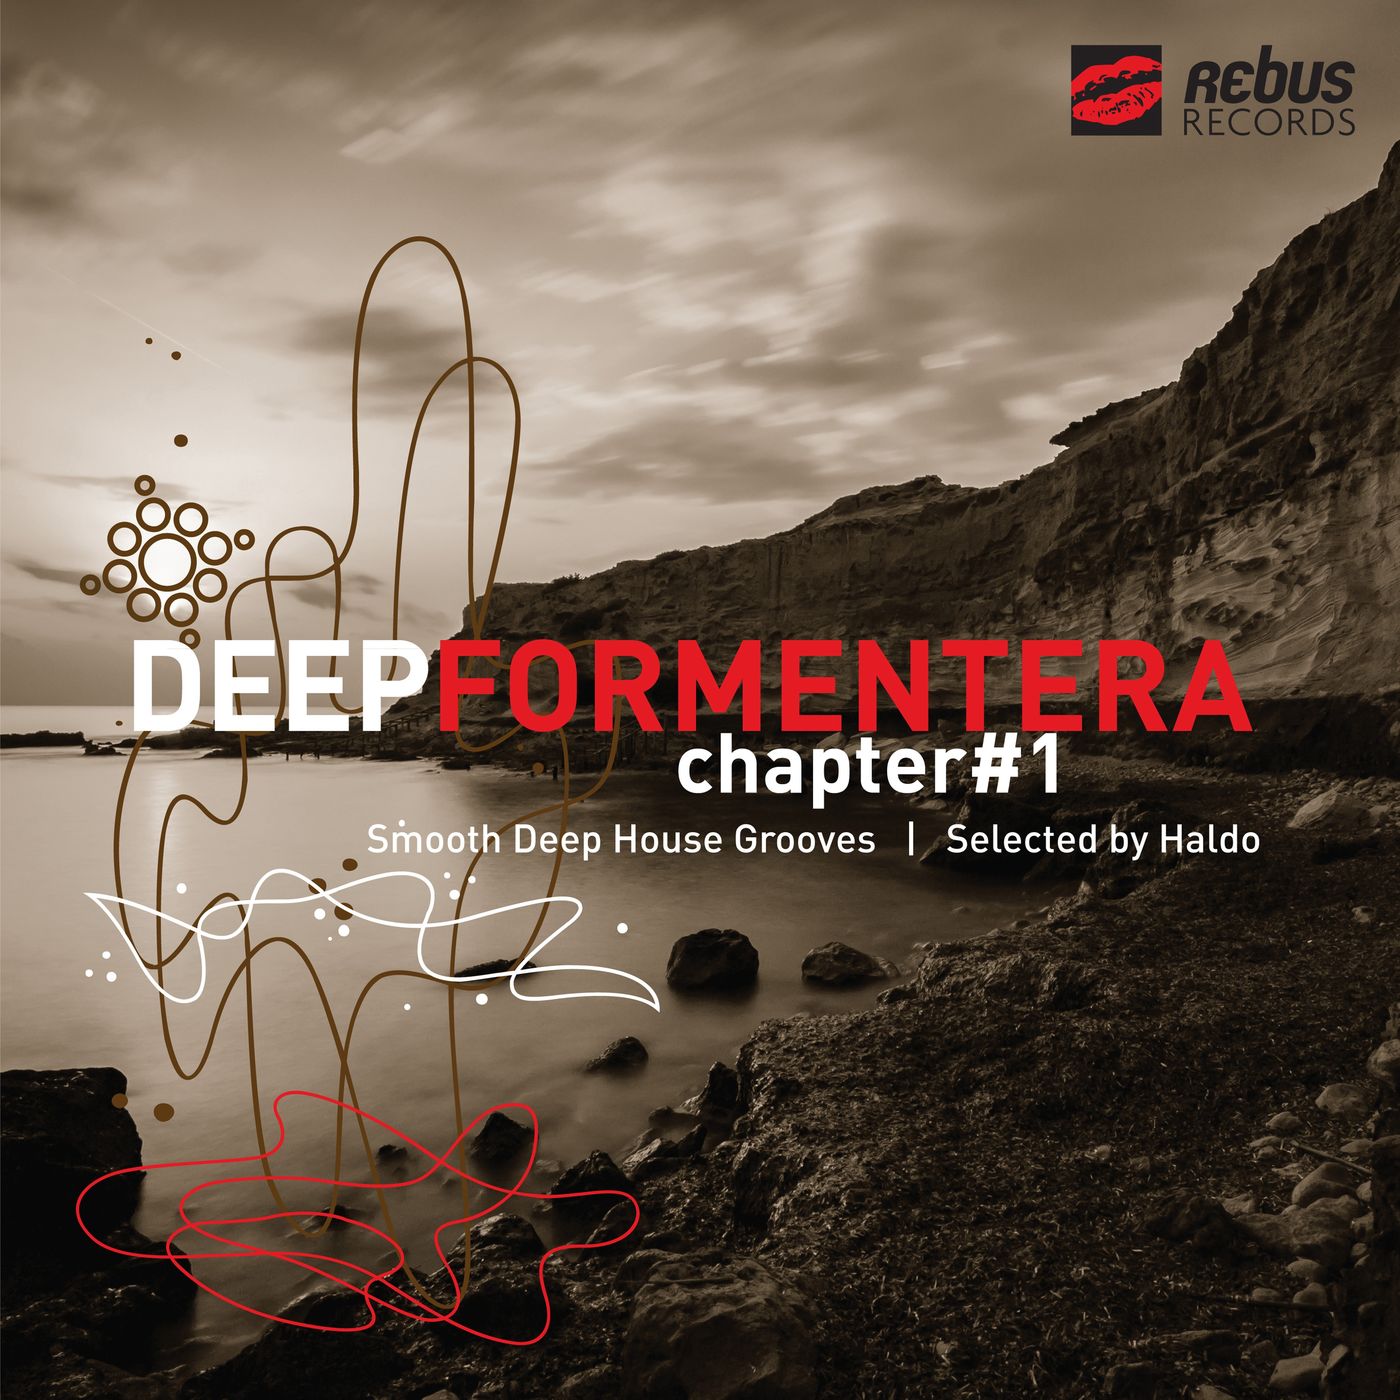 VA - Deep Formentera # 1 (Selected By Haldo) / Rebus Records